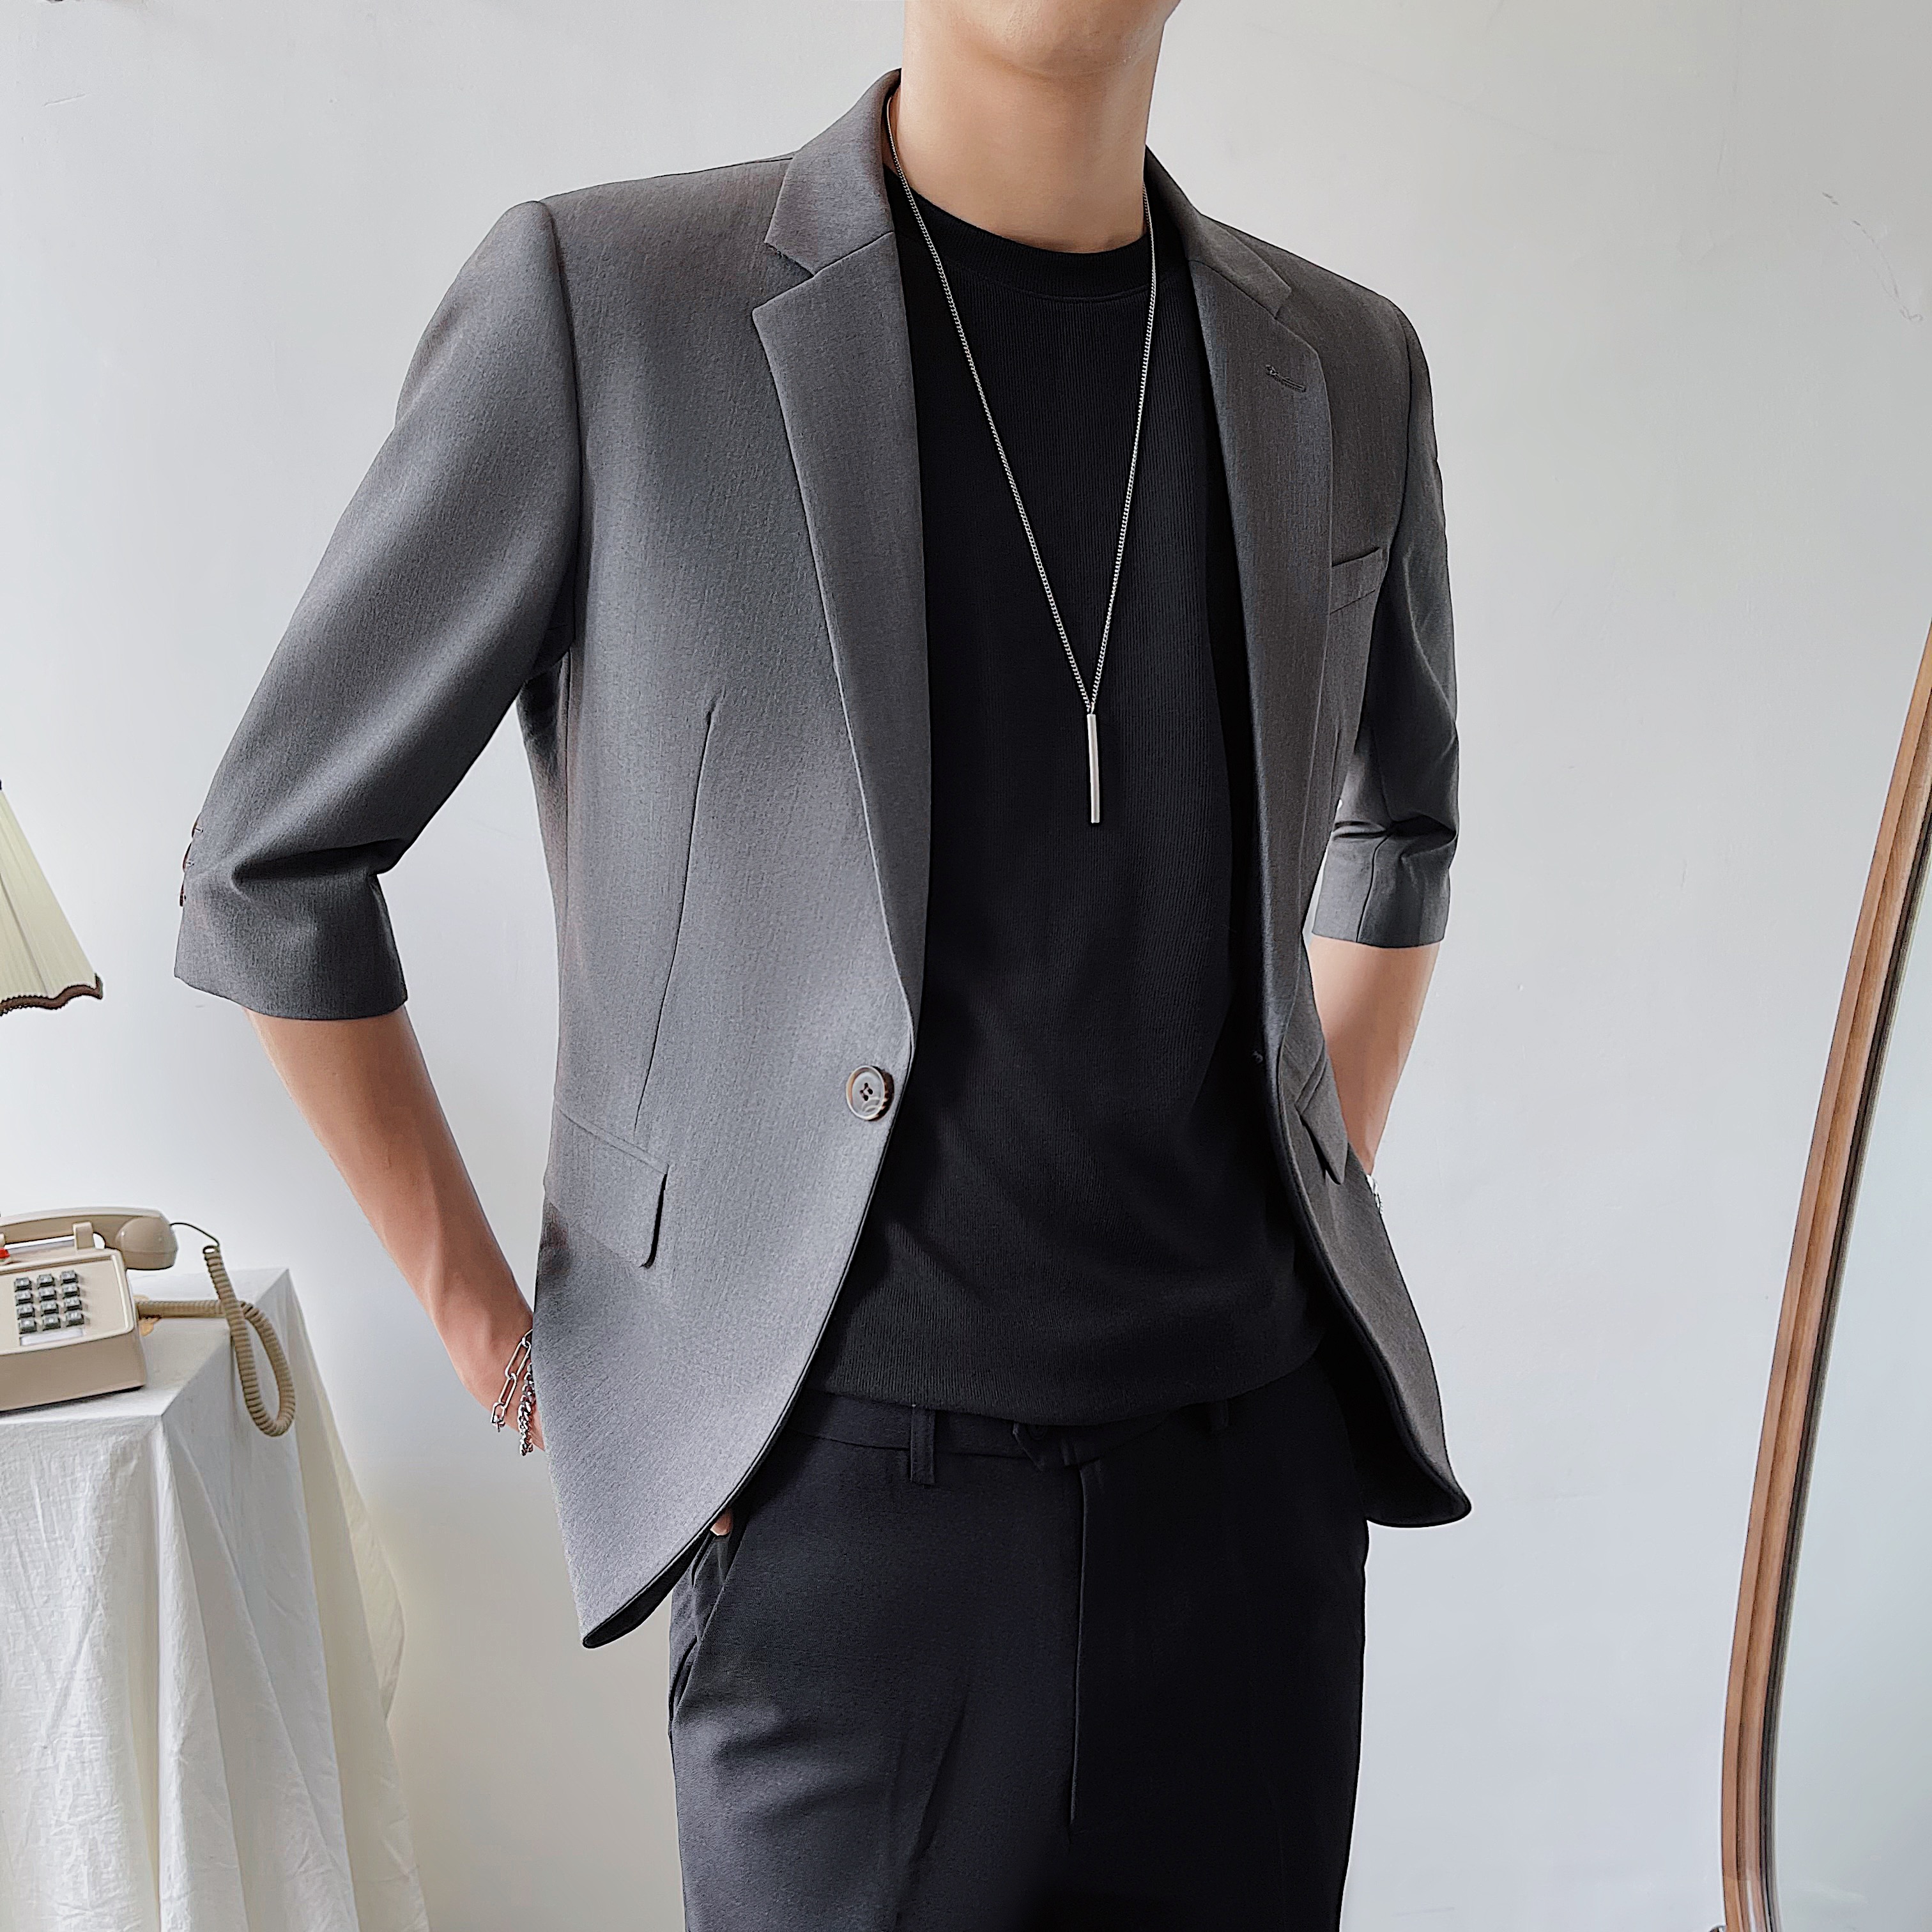 夏薄款中袖西装外套韩版修身灰色西服上衣七分袖商务休闲ZX01-P75